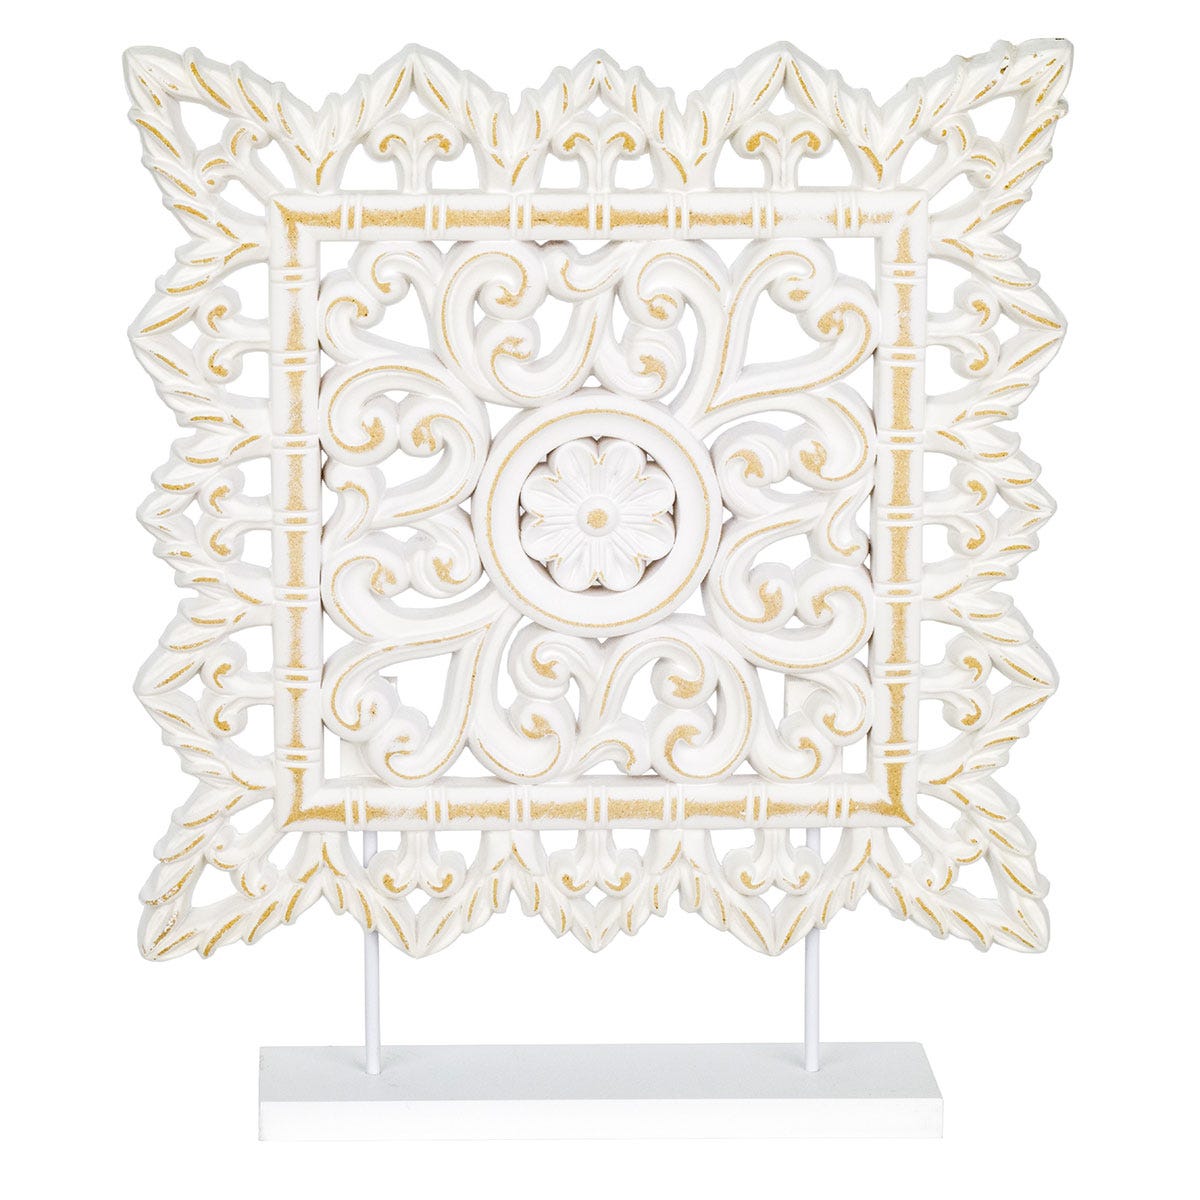 Signes Grimalt By SIGRIS - Adorno con base Mosaico Marrón de Mdf, Figura Figuras  Decorativas Decoracion Salon 40x48x8cm